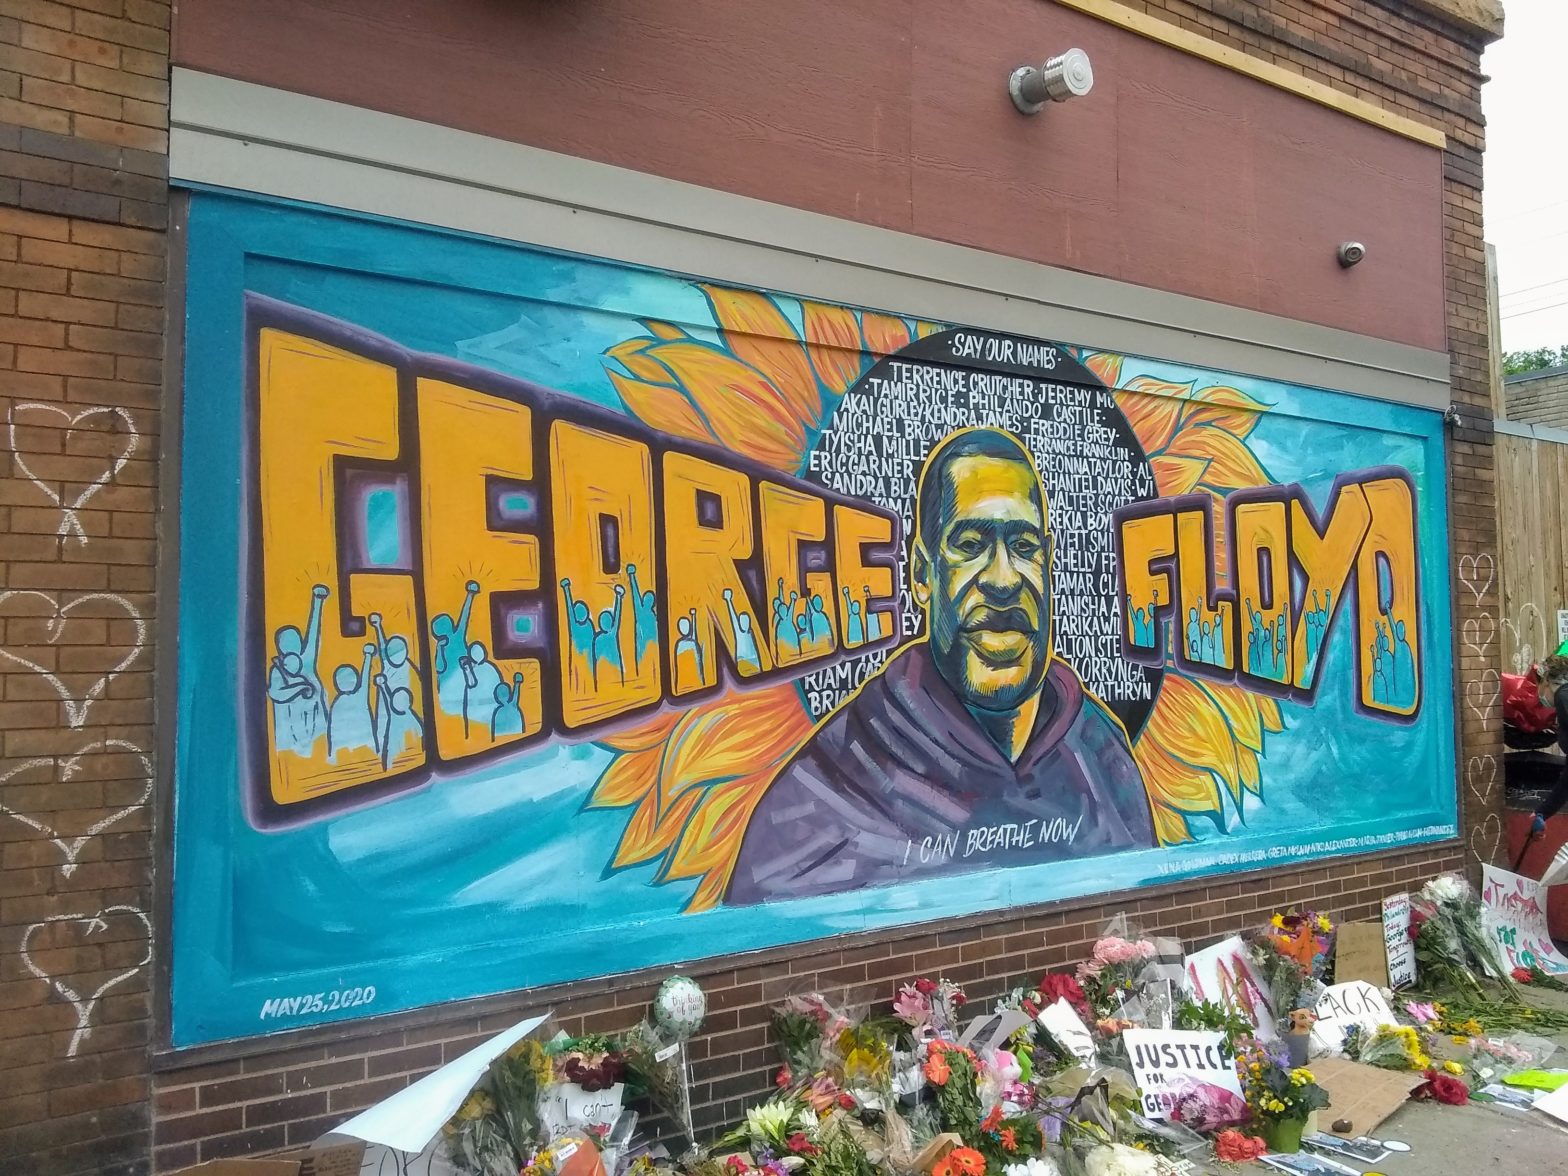 George Floyd Mural - Credit CityPages